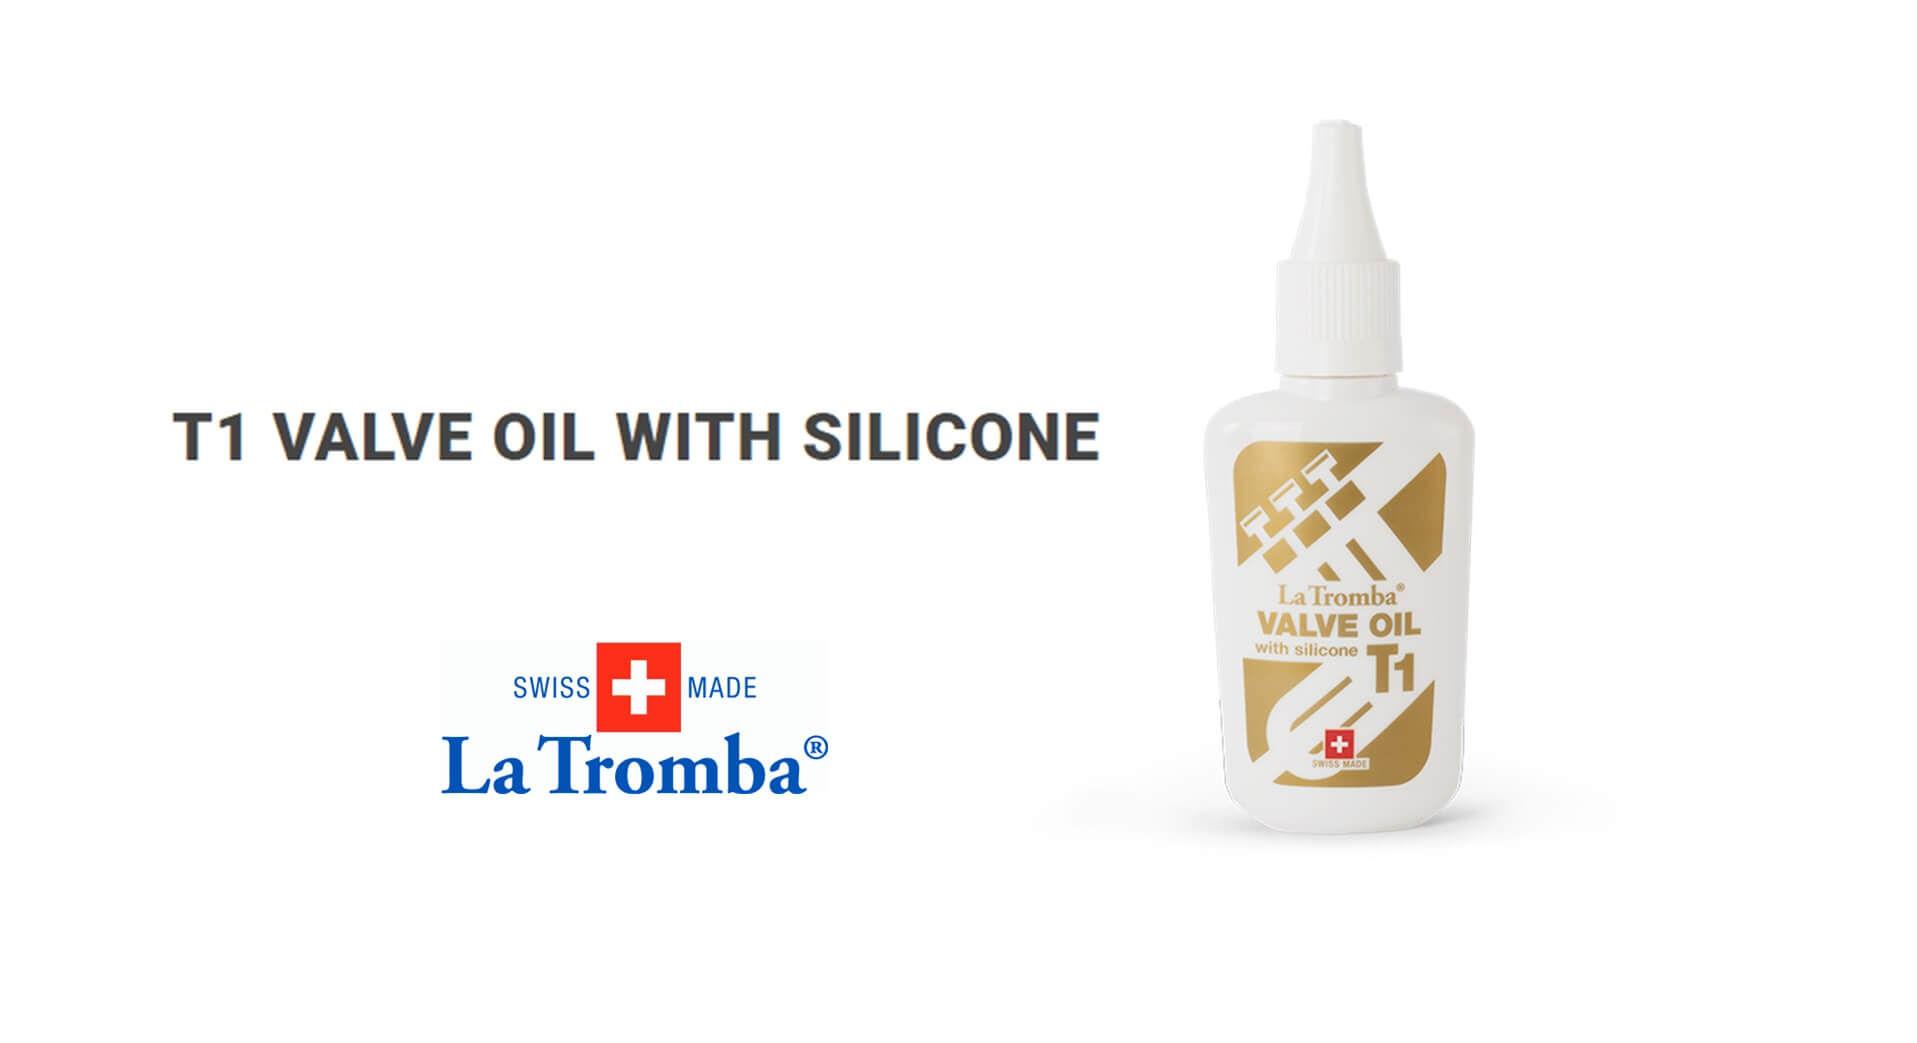 La Tromba T1 VALVE OIL WITH SILICONE 經典矽樹脂